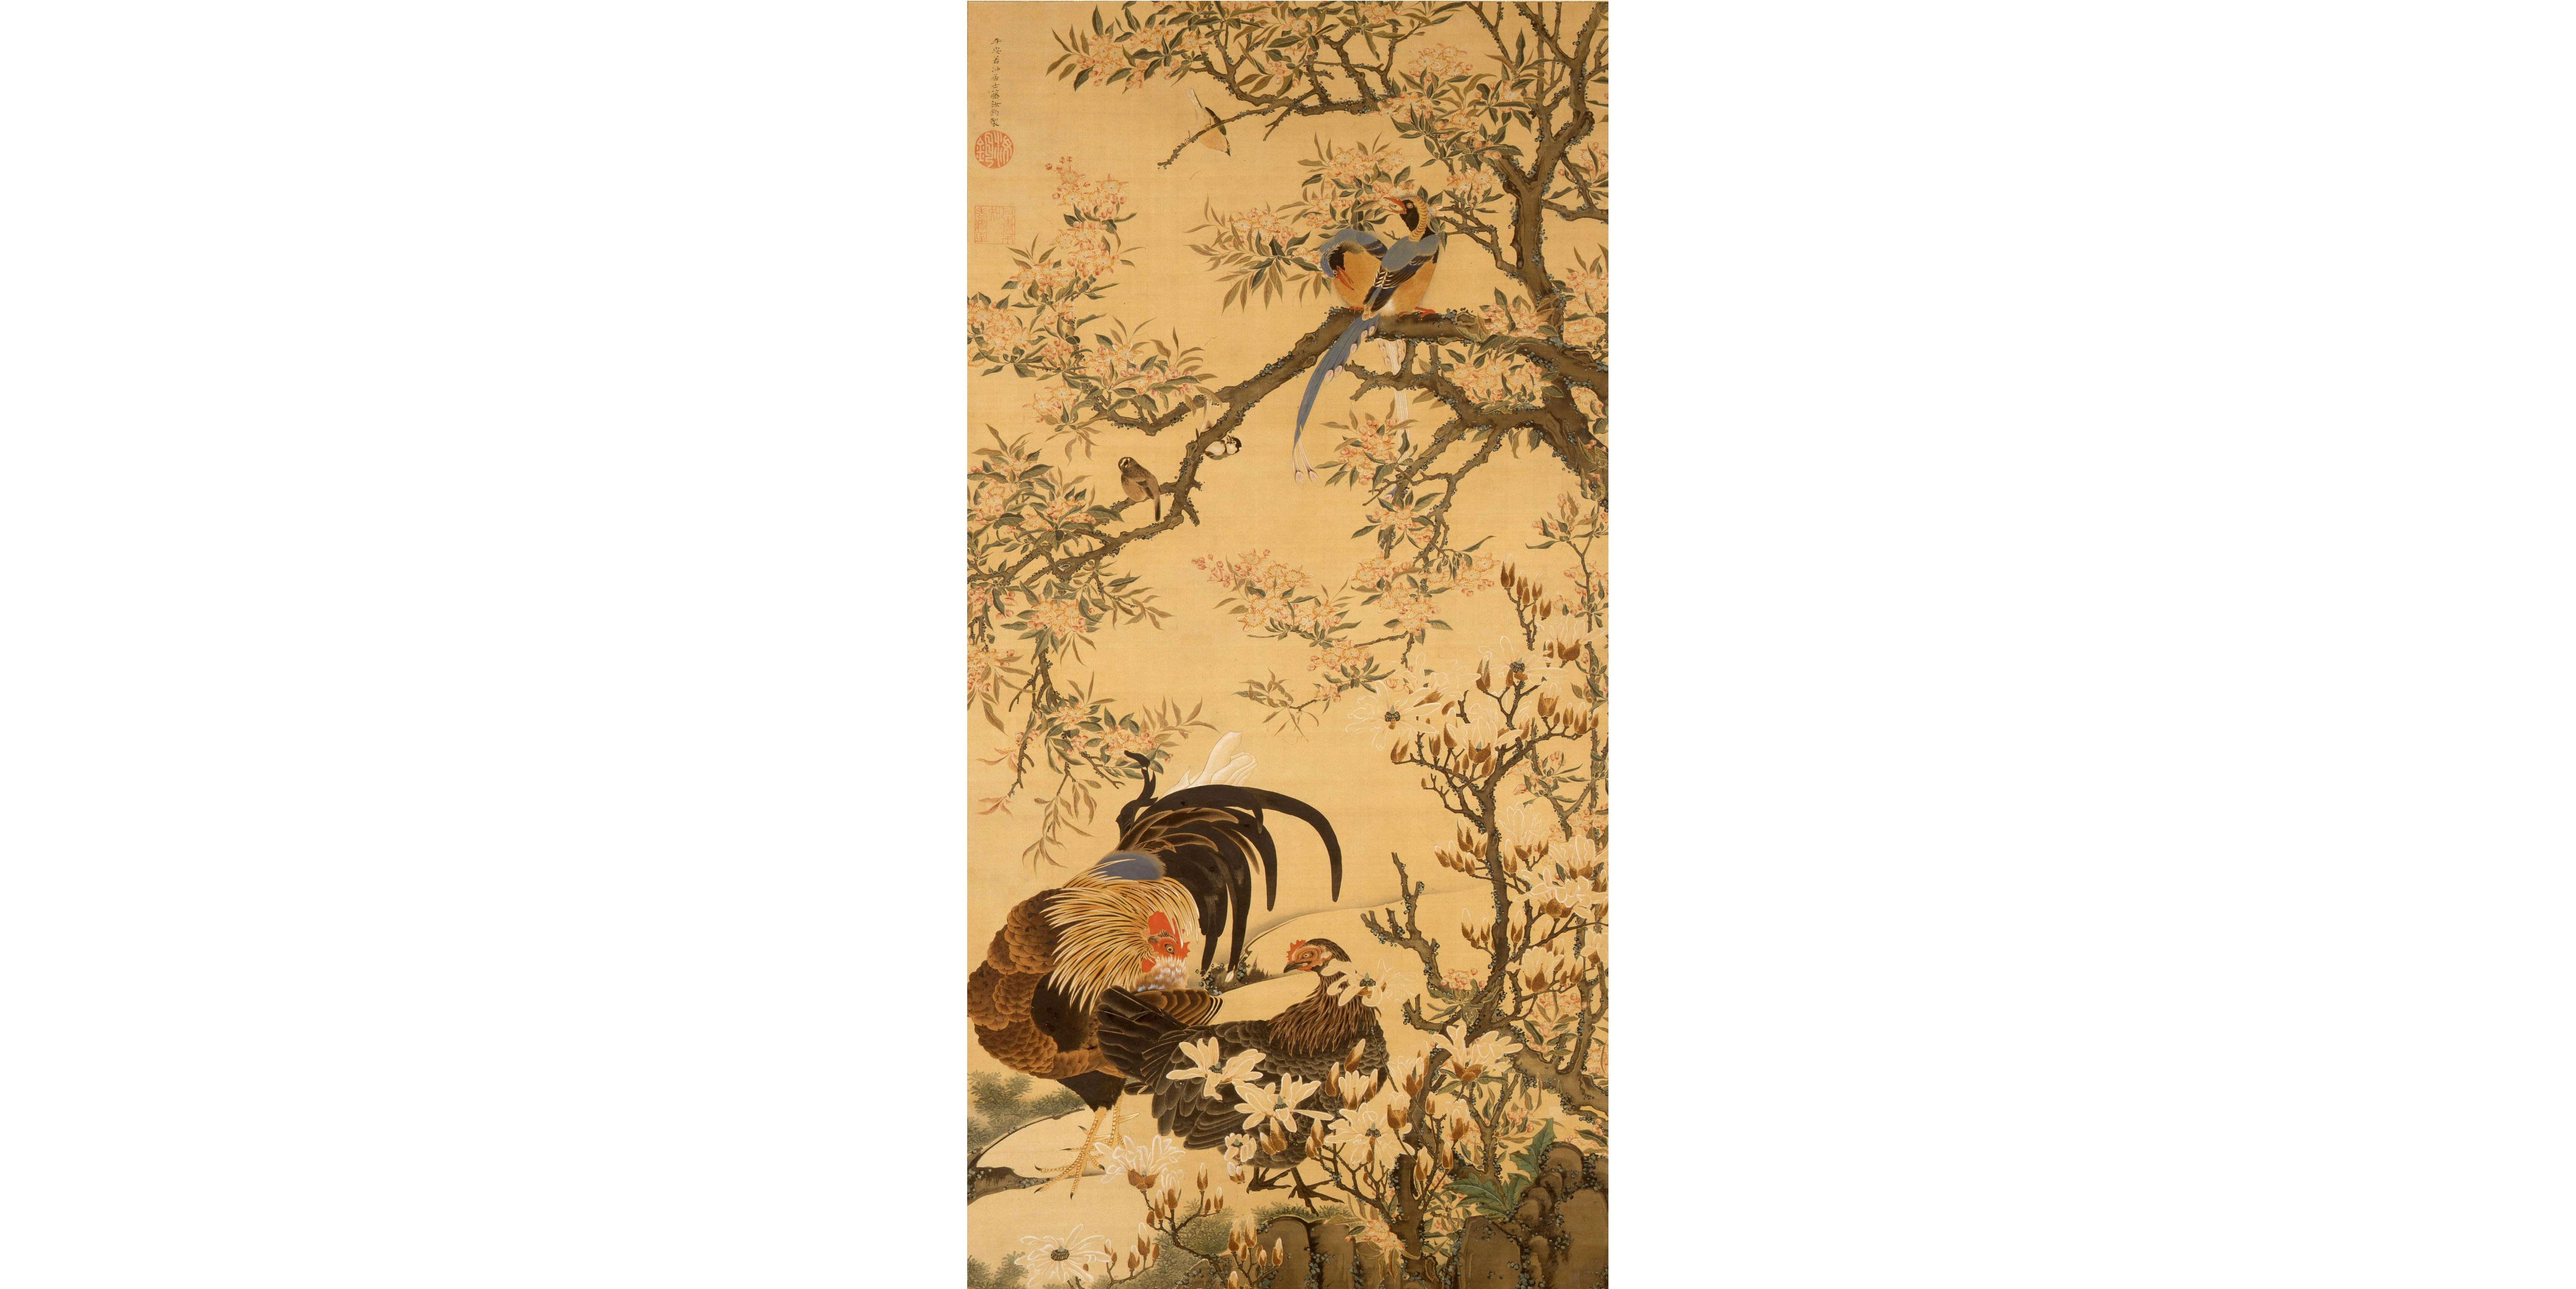 日本絵画史が大きく変動した200年にフォーカス。「江戸の奇跡・明治の 